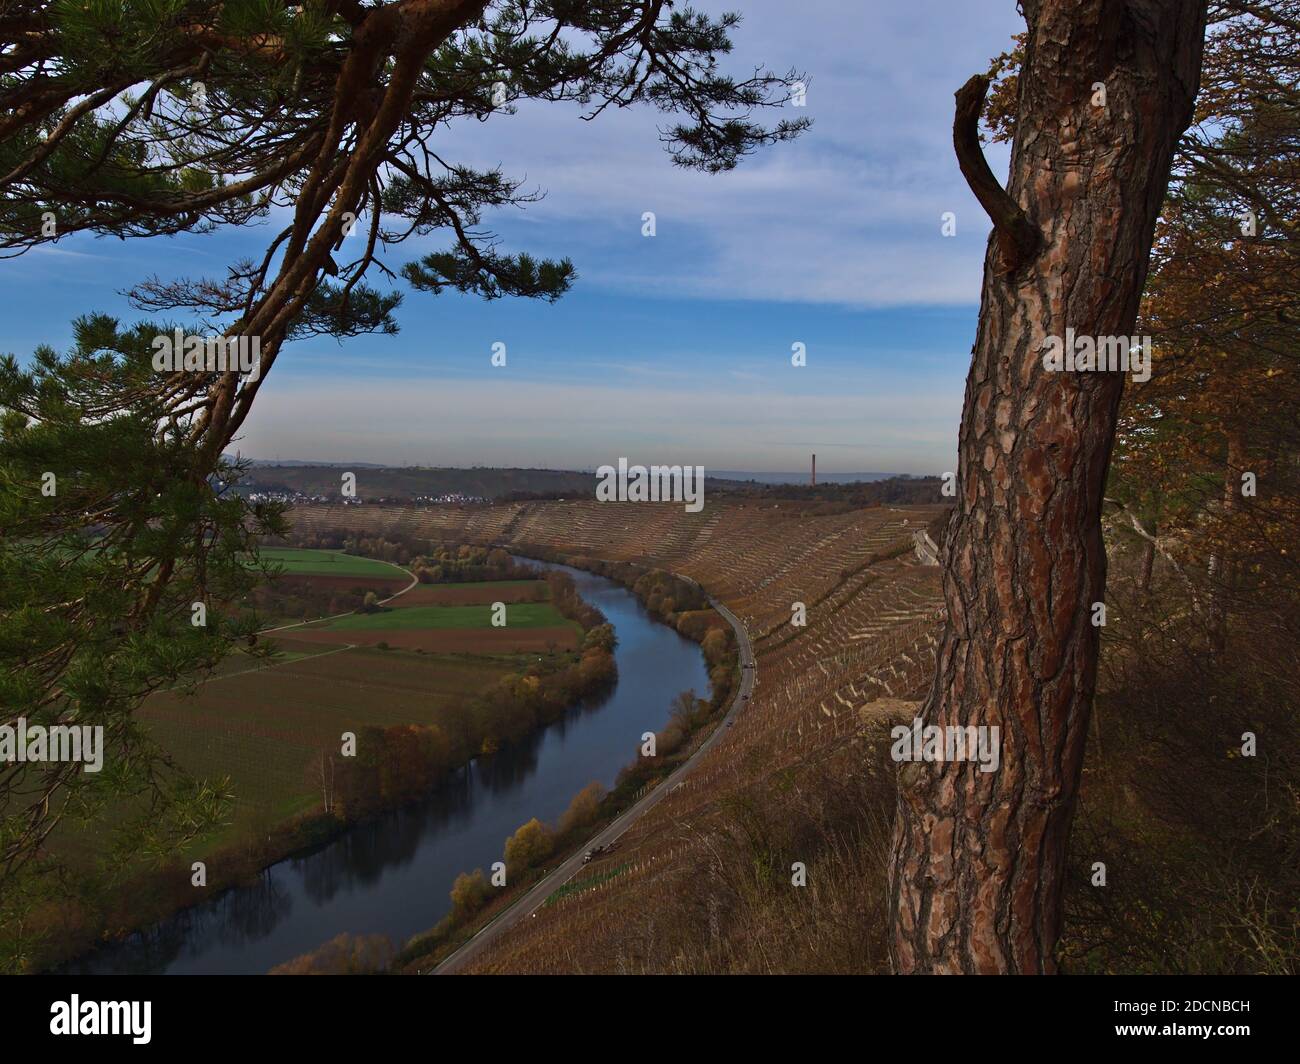 Belle vallée de la rivière Neckar avec ses vignobles en terrasse sur les pentes et ses arbres décolorés sur les berges en automne, vue à travers les pins. Banque D'Images